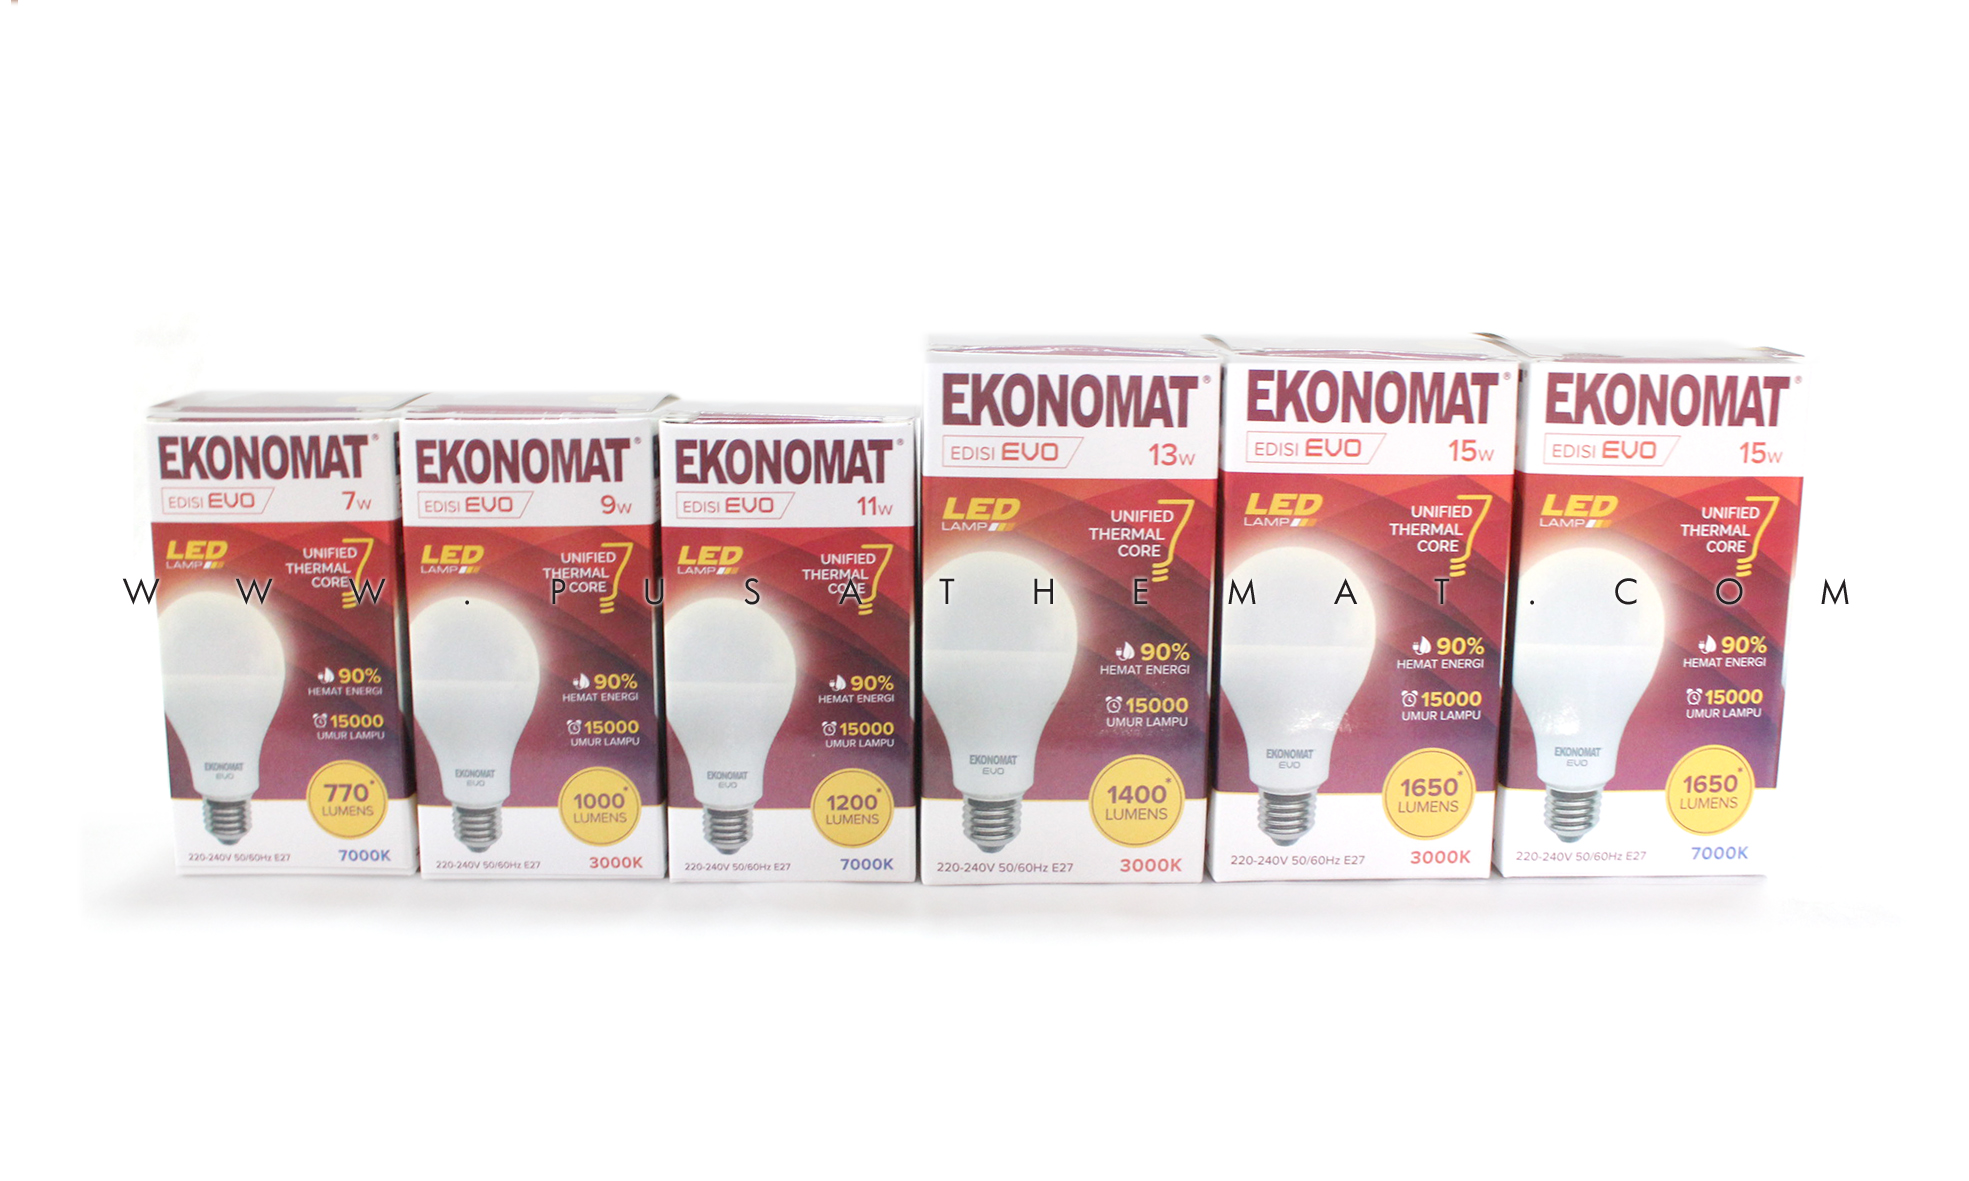 Product :: Lamp :: LED :: Ekonomat LED EVO